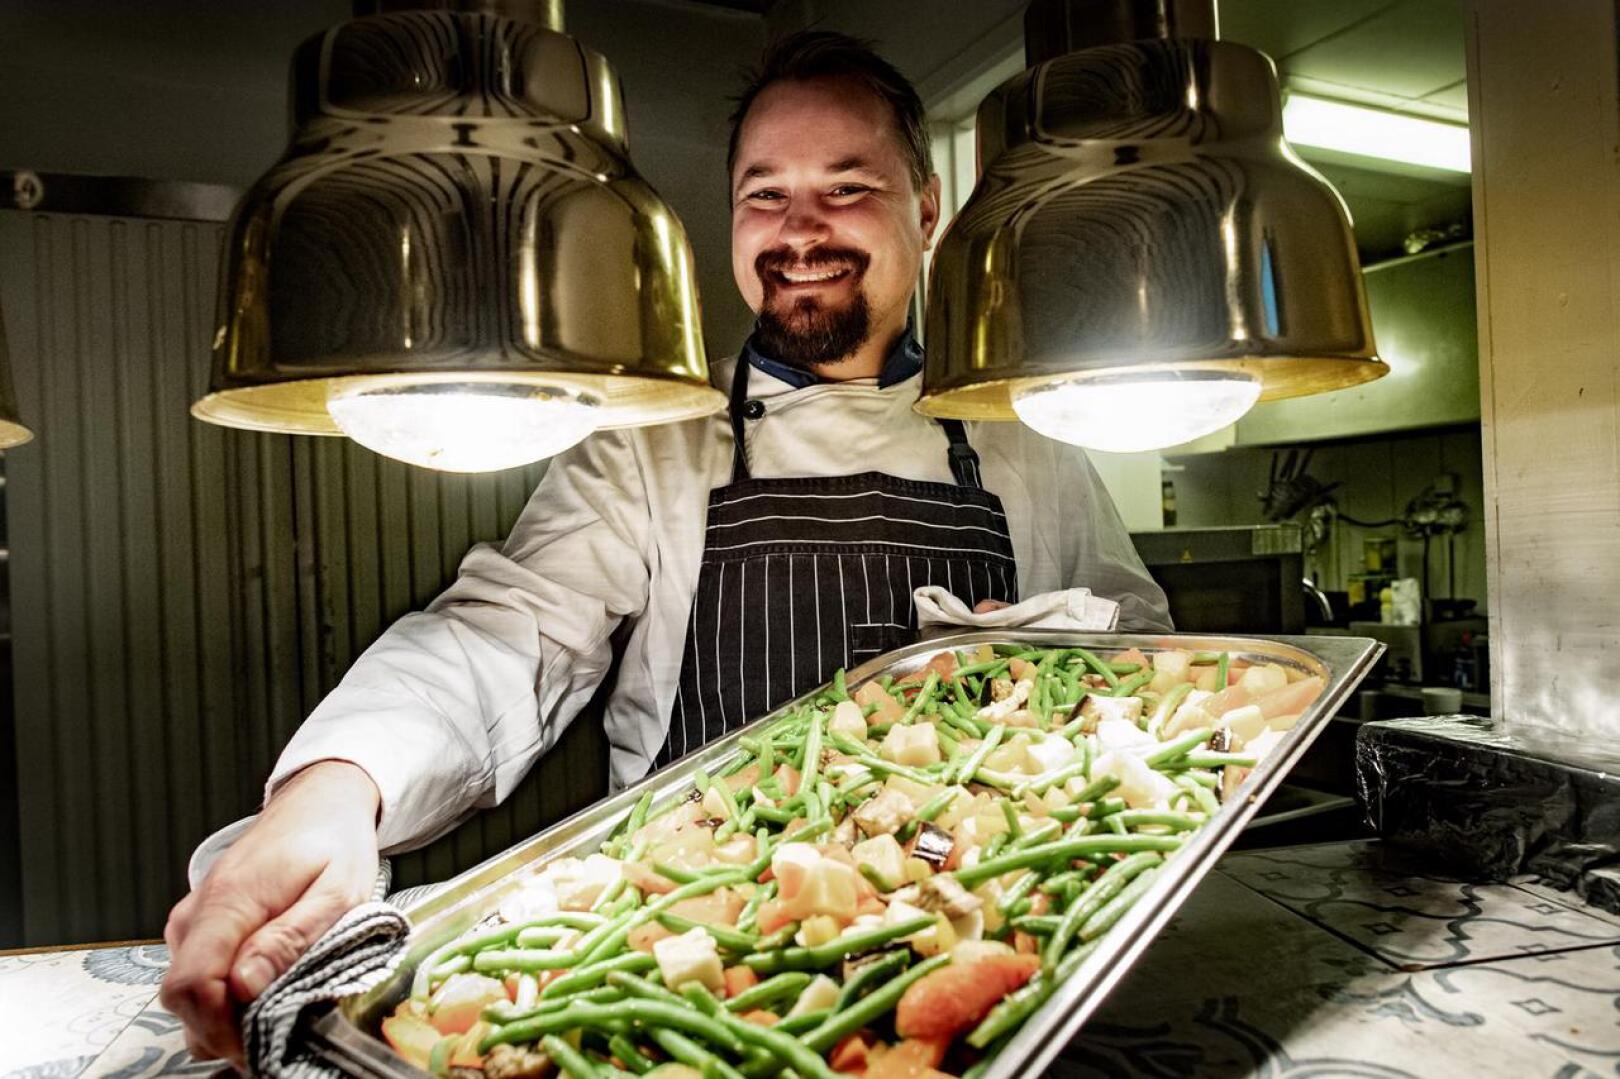 Ravintola Sigridsin yrittäjä Niklas Salo toivoo, että ammattikoulujen opetuksessa keskityttäisiin kunnolla perusasioihin ja käytännön töihin.